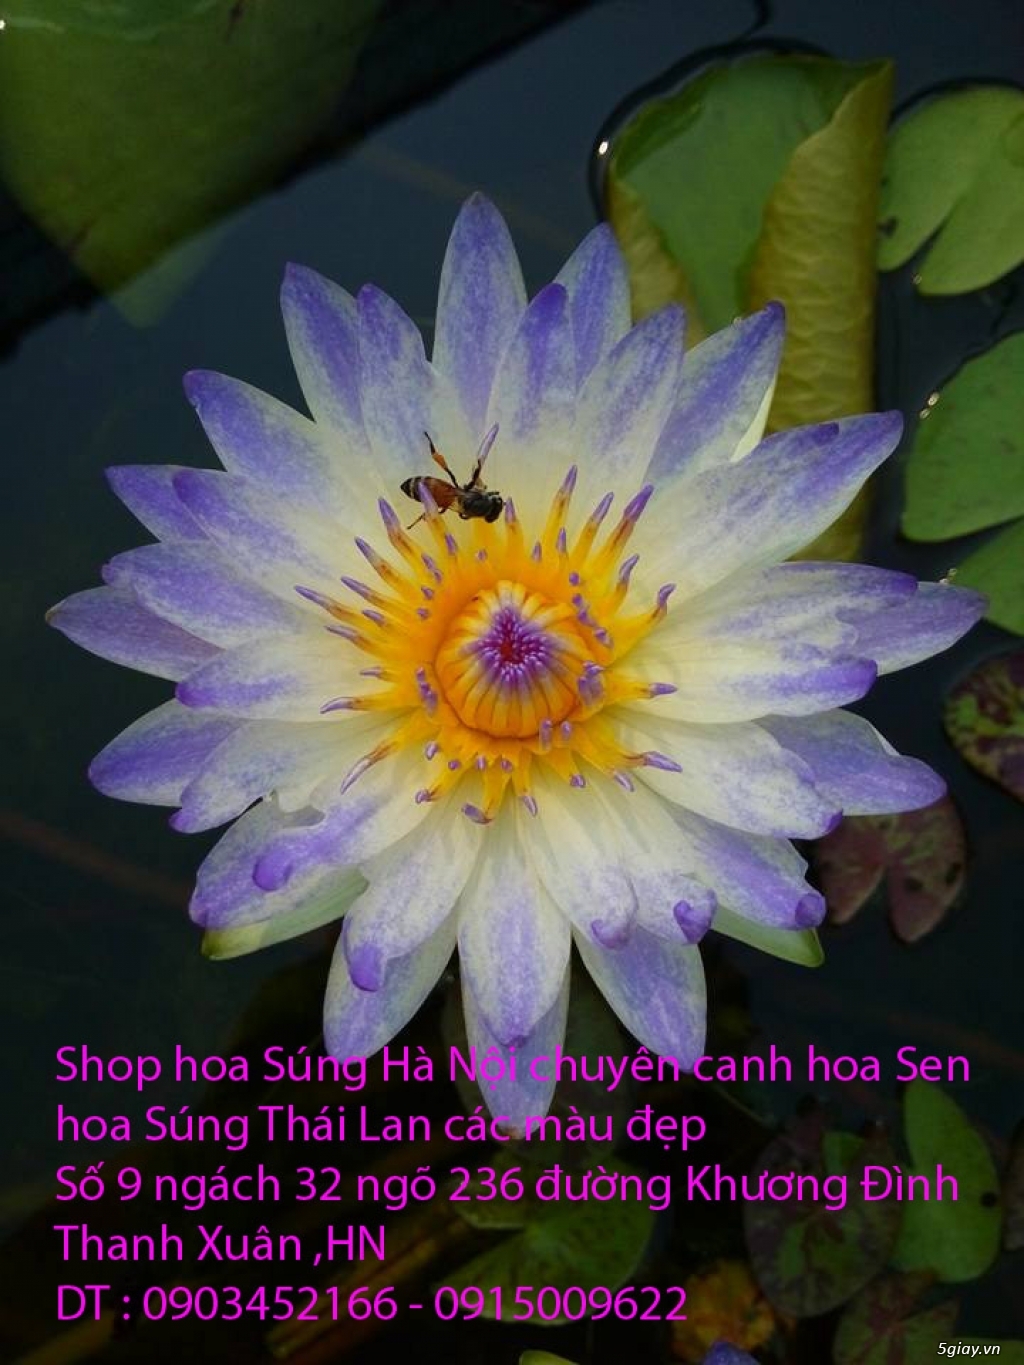 Bán hoa Súng Thái Lan giữa lòng Hà Nội - 11